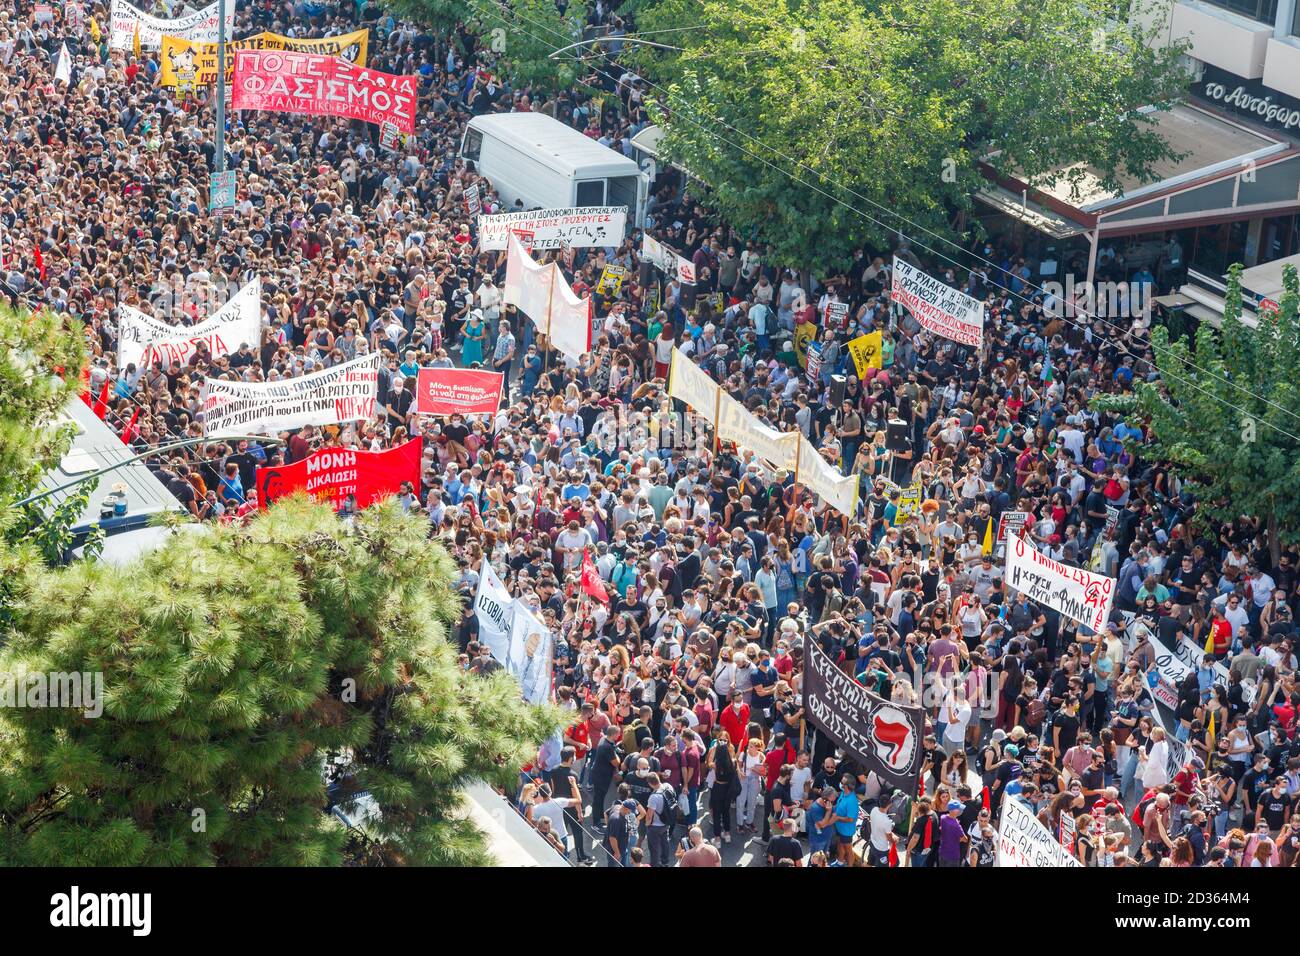 Des milliers de personnes protestant à Athènes, en Grèce, en attendant le verdict du 'procès de l'Aube dorée', le procès le plus important depuis 50 ans Banque D'Images